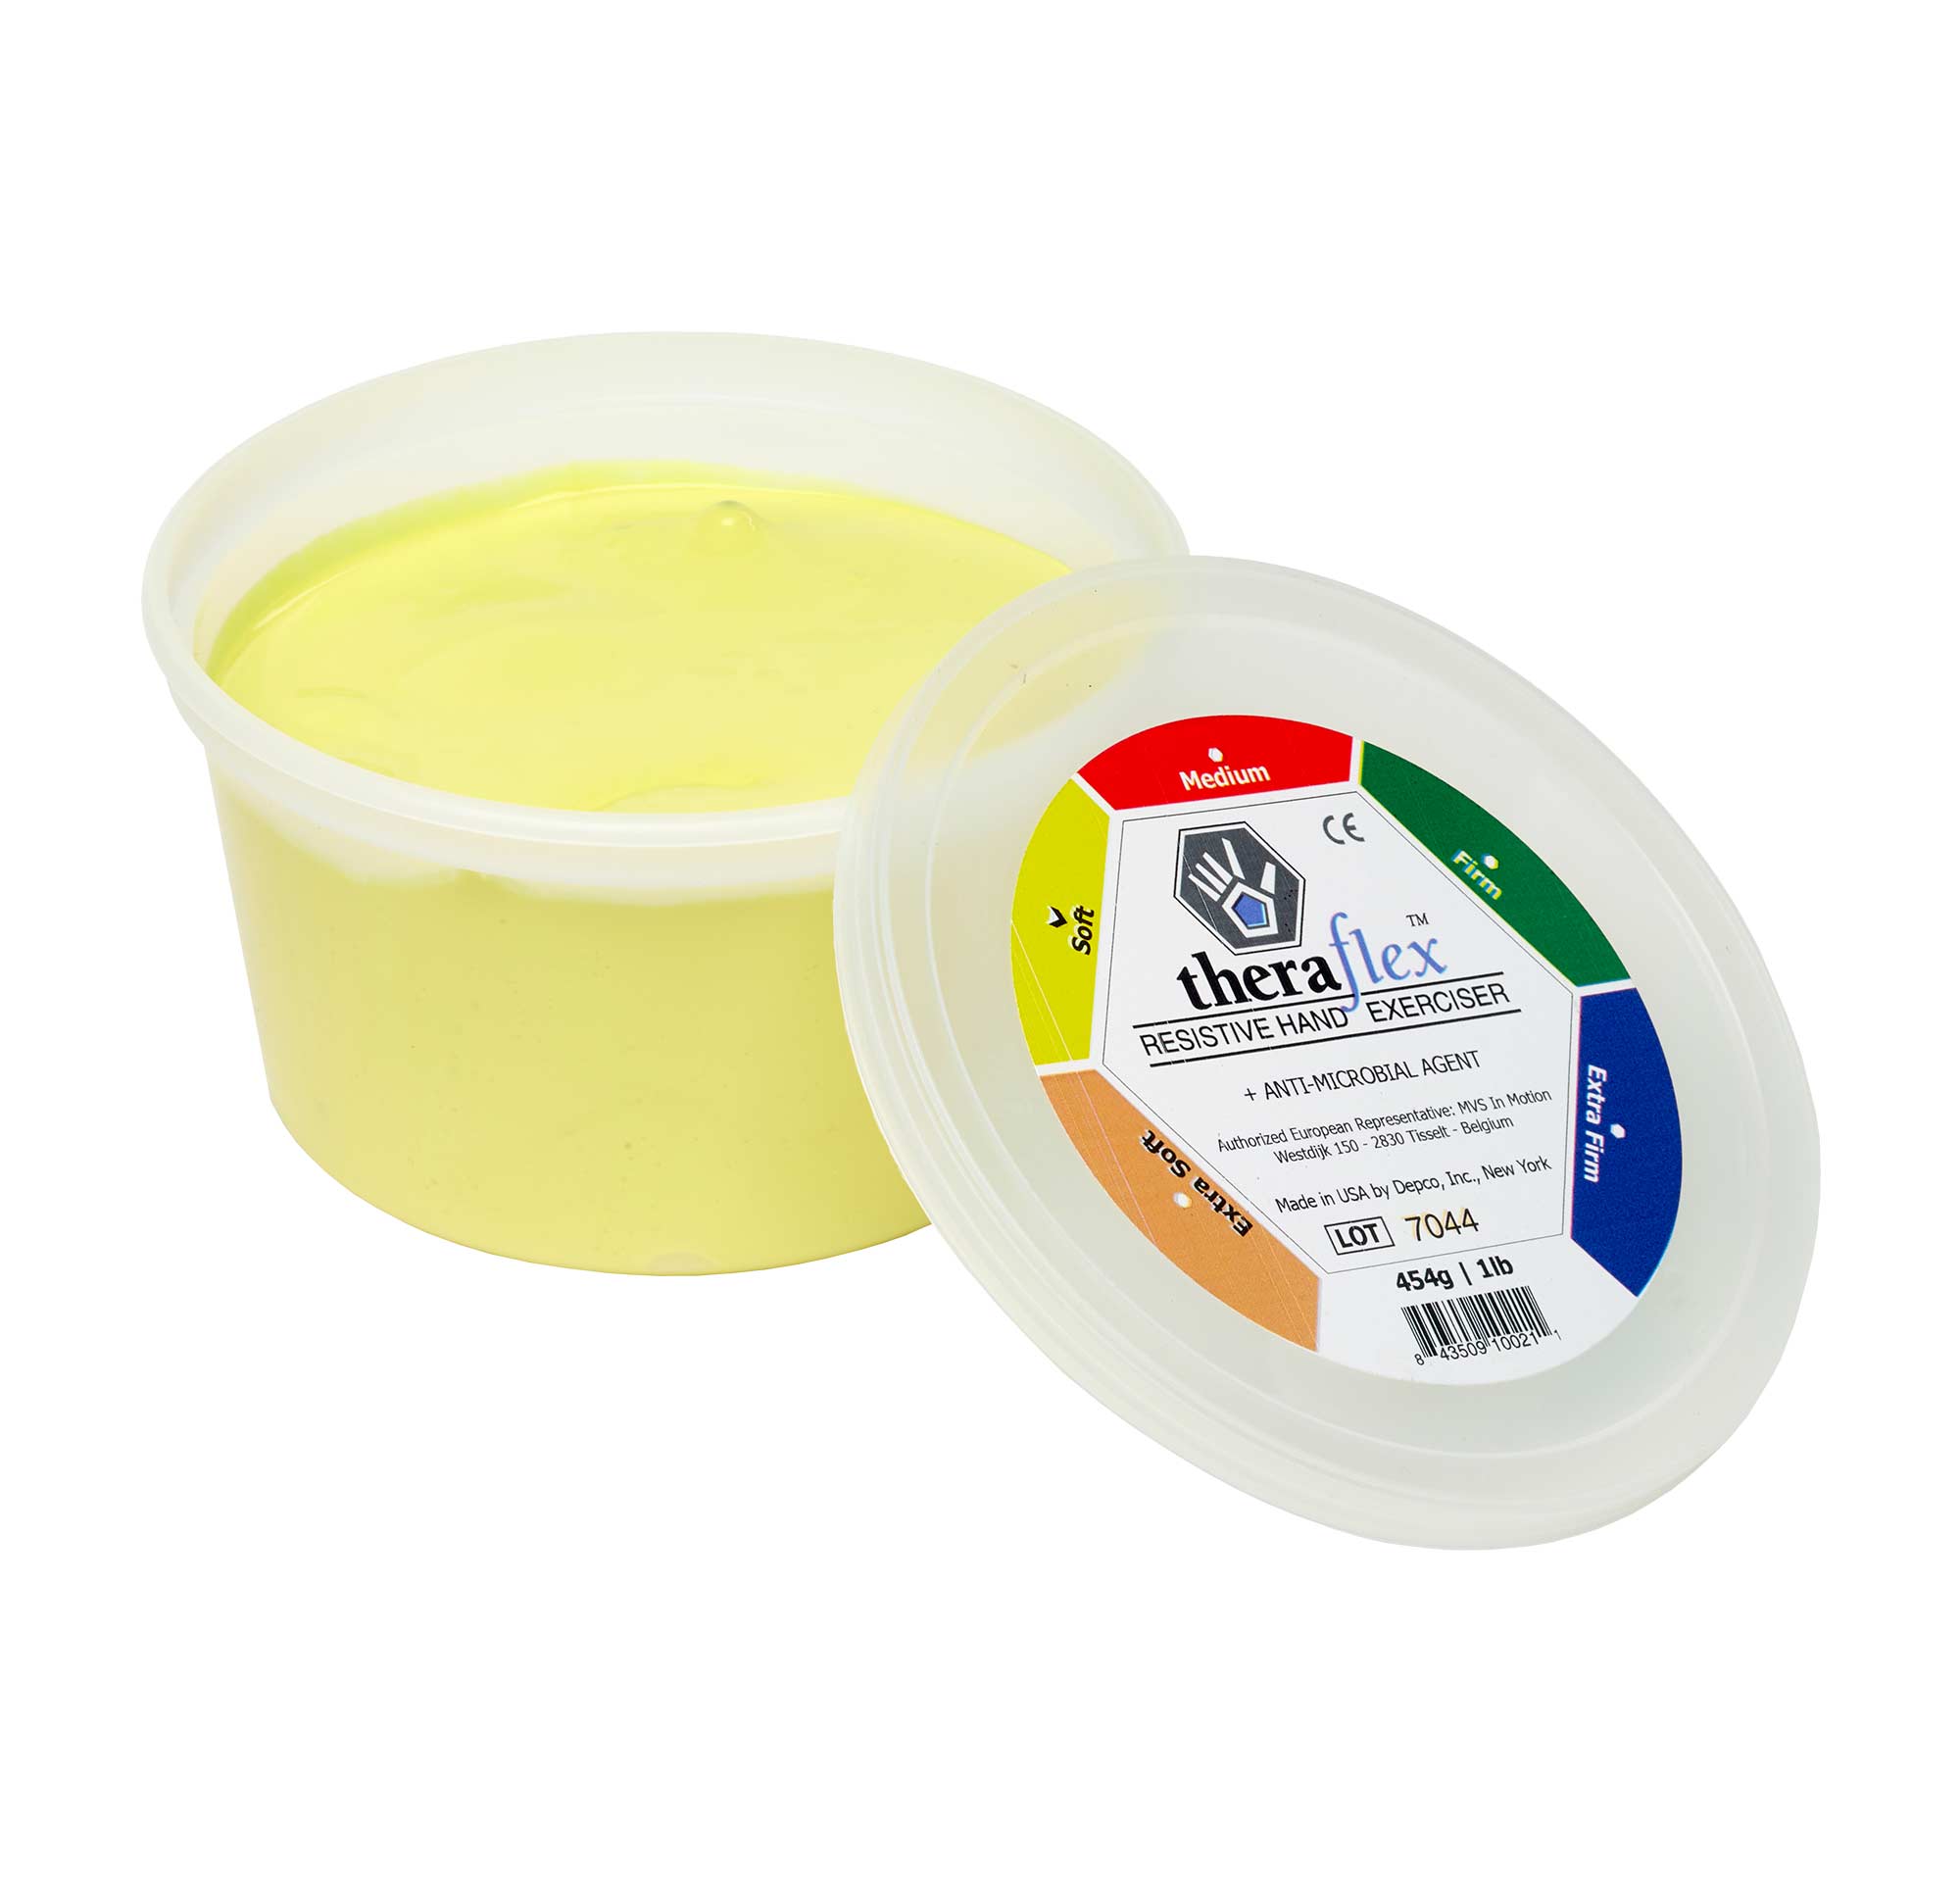 Theraflex Therapieknetmasse soft, gelb 454 g